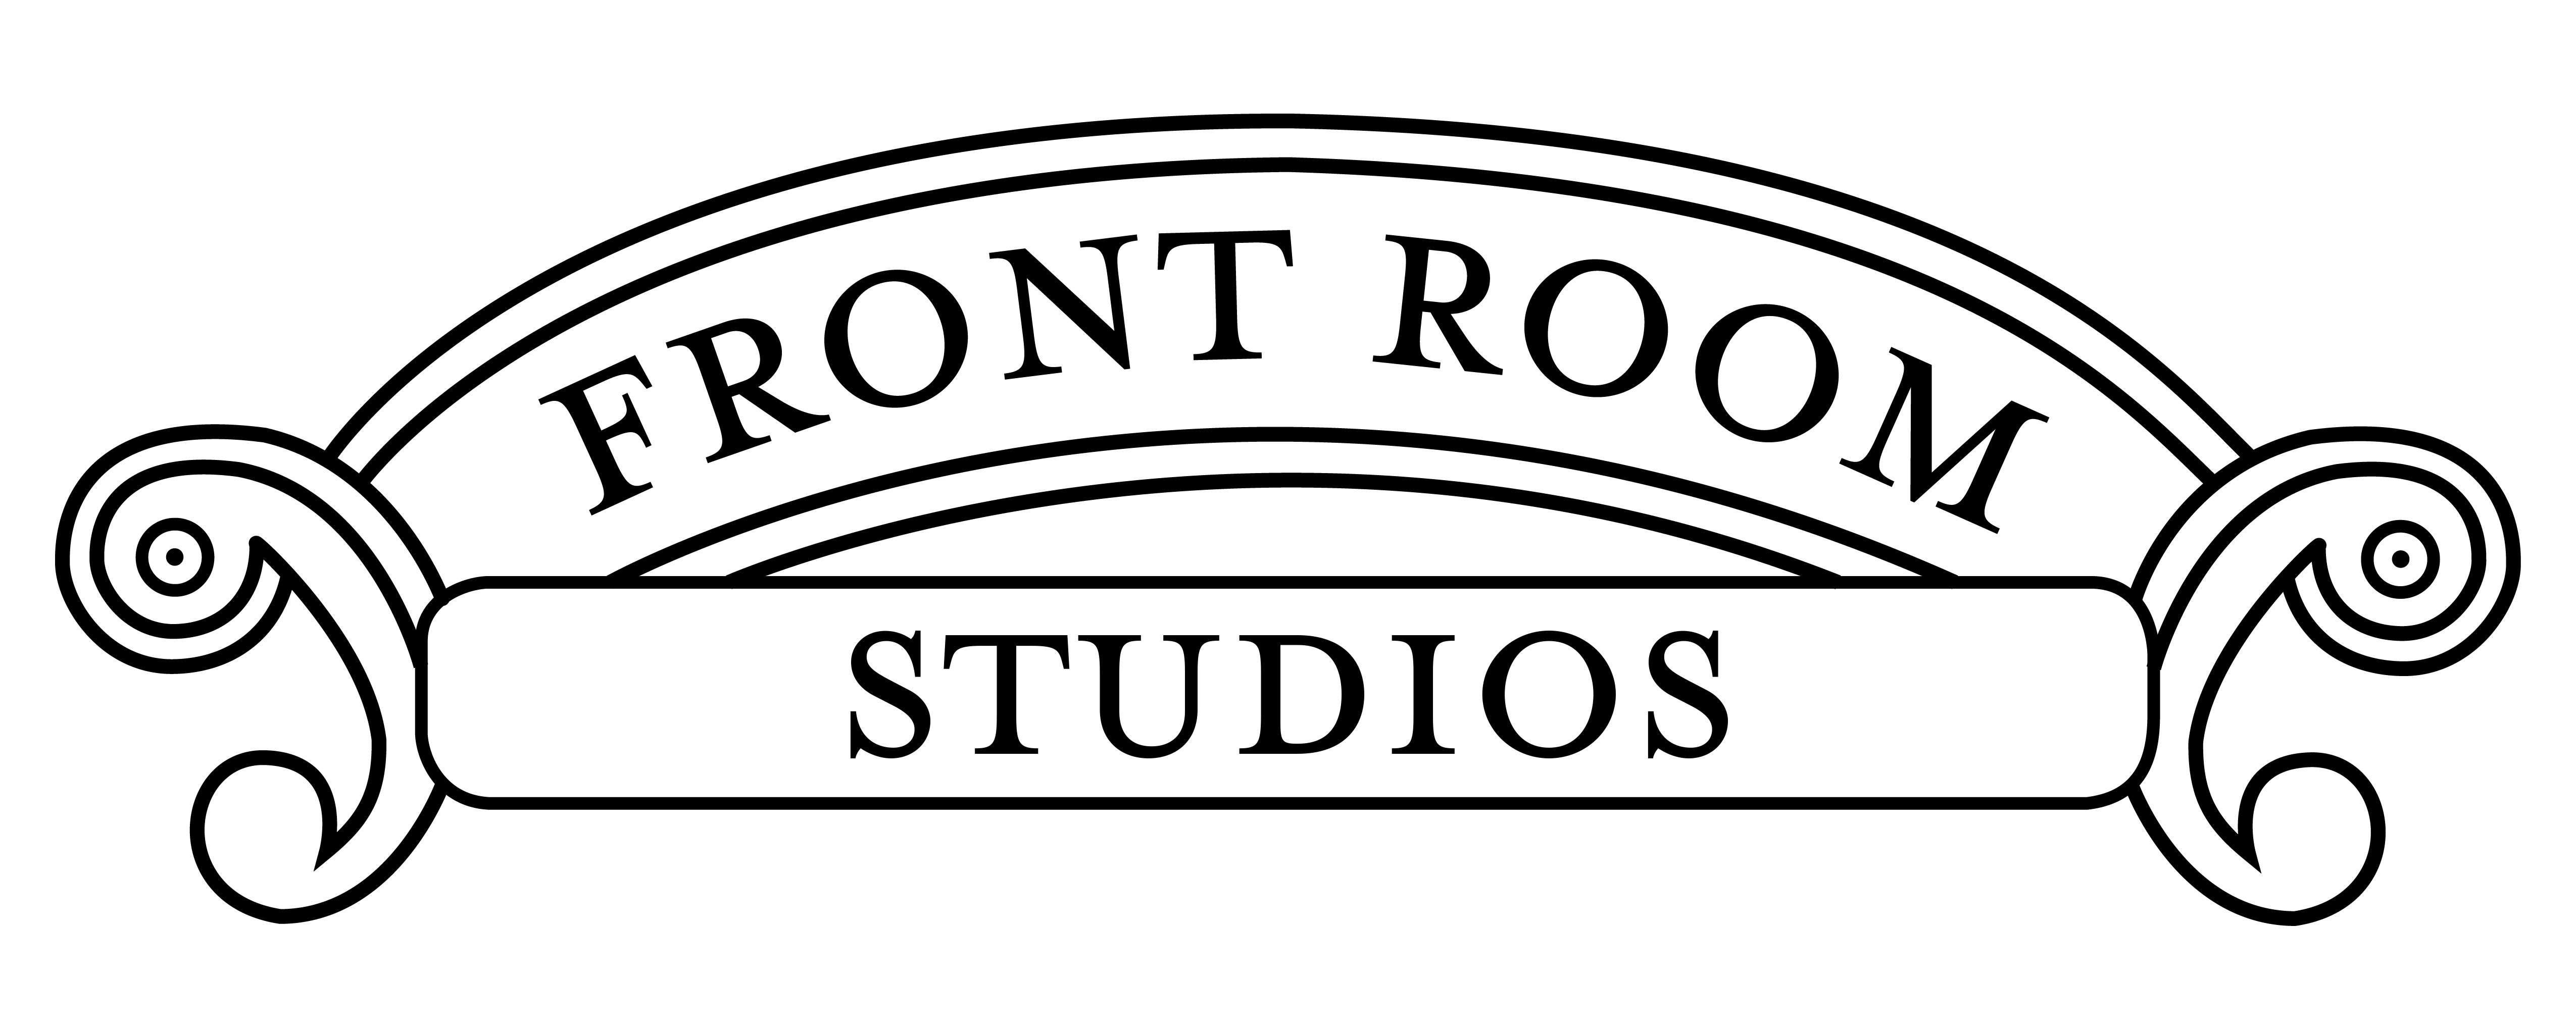 Front Room Studios